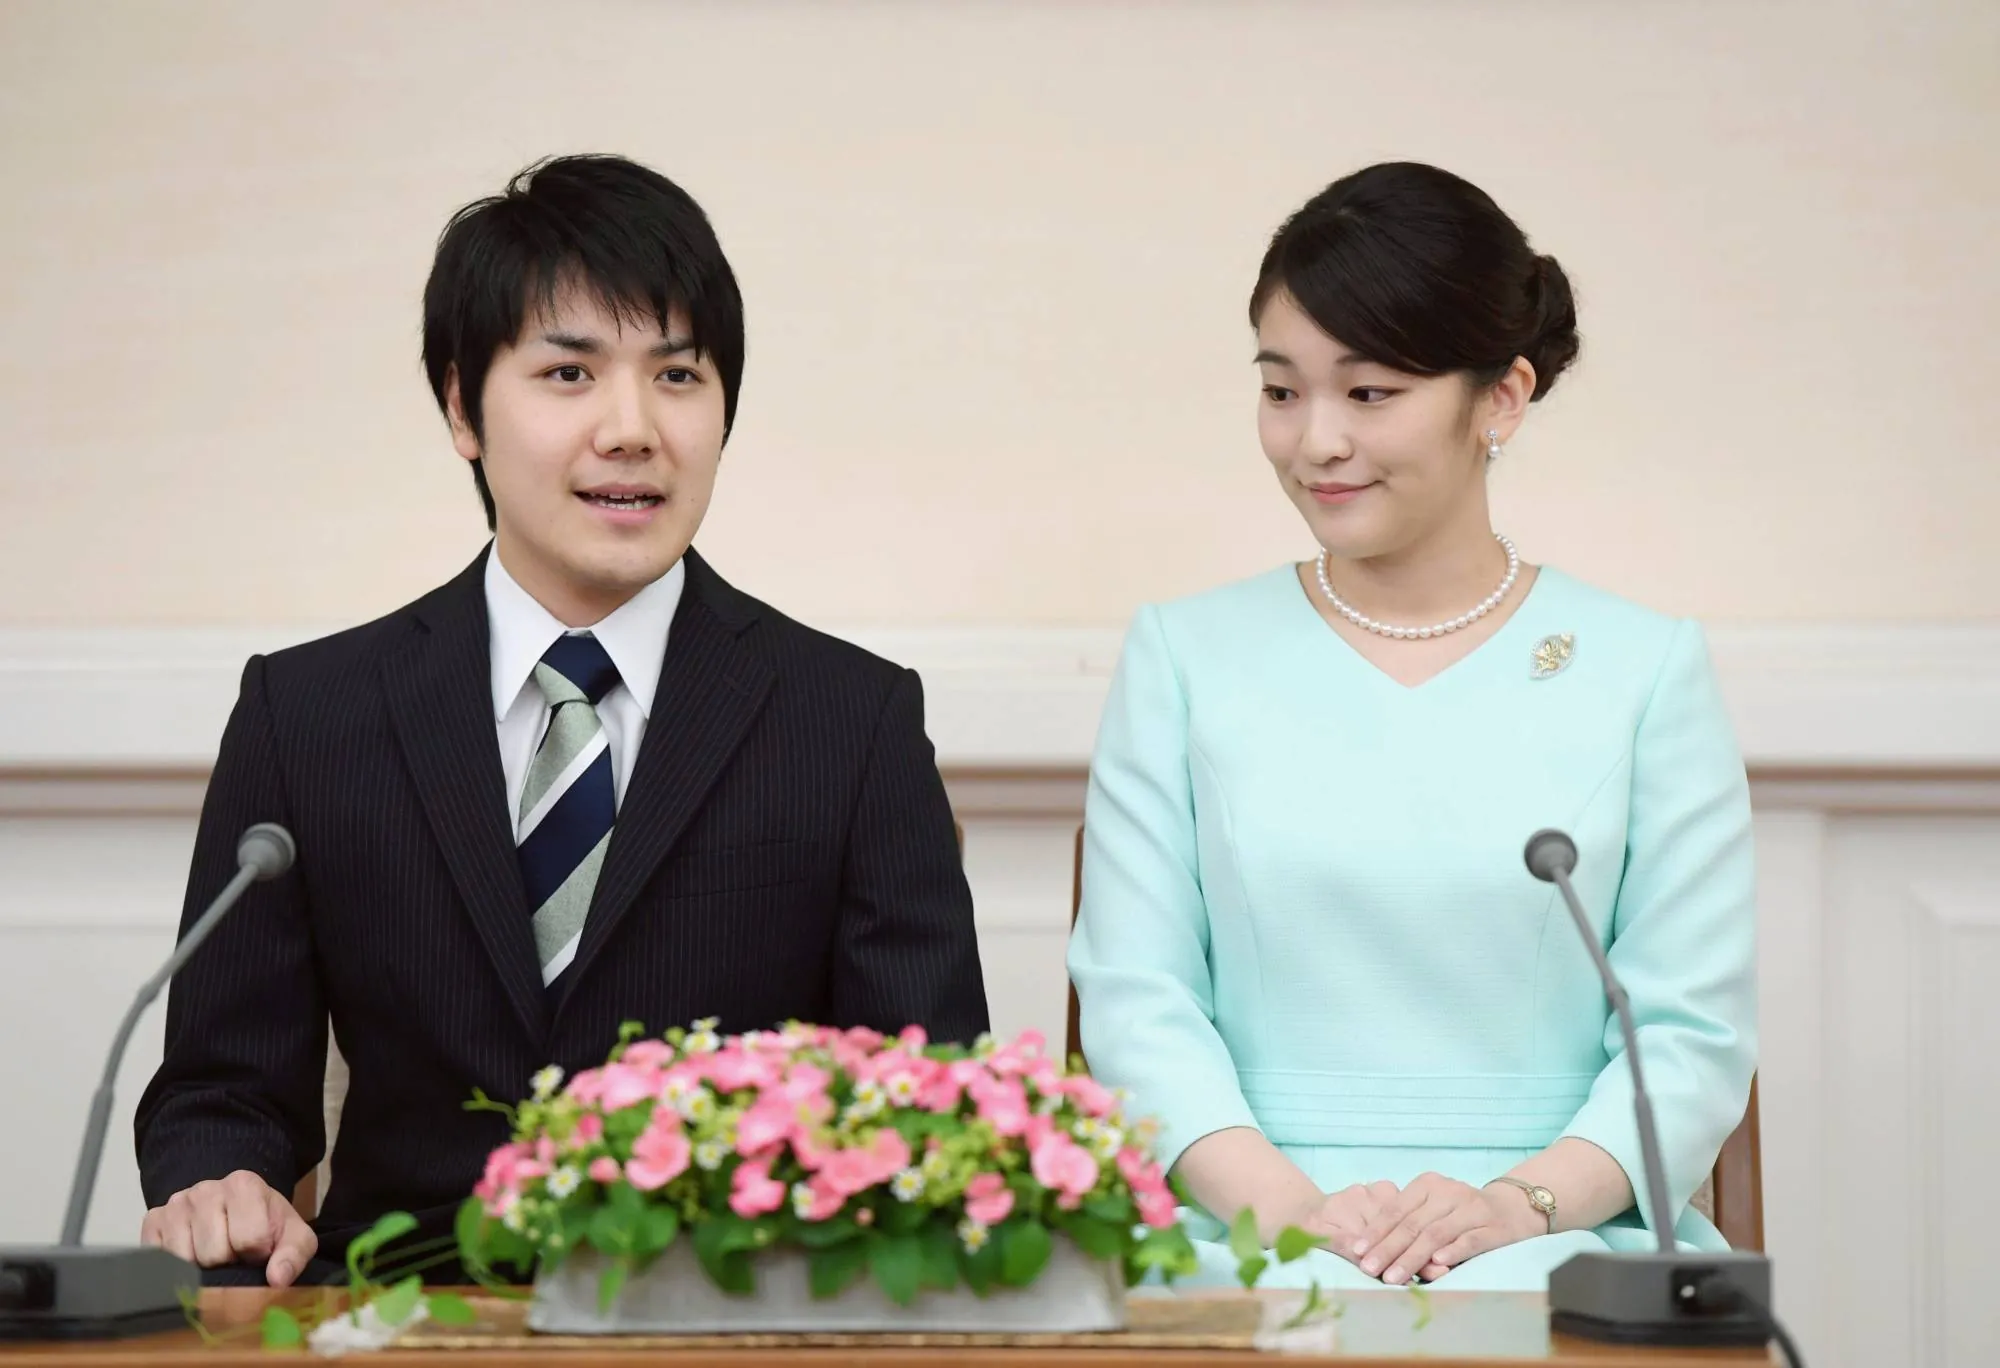 Kei Komuro Is Married To Princess Mako!